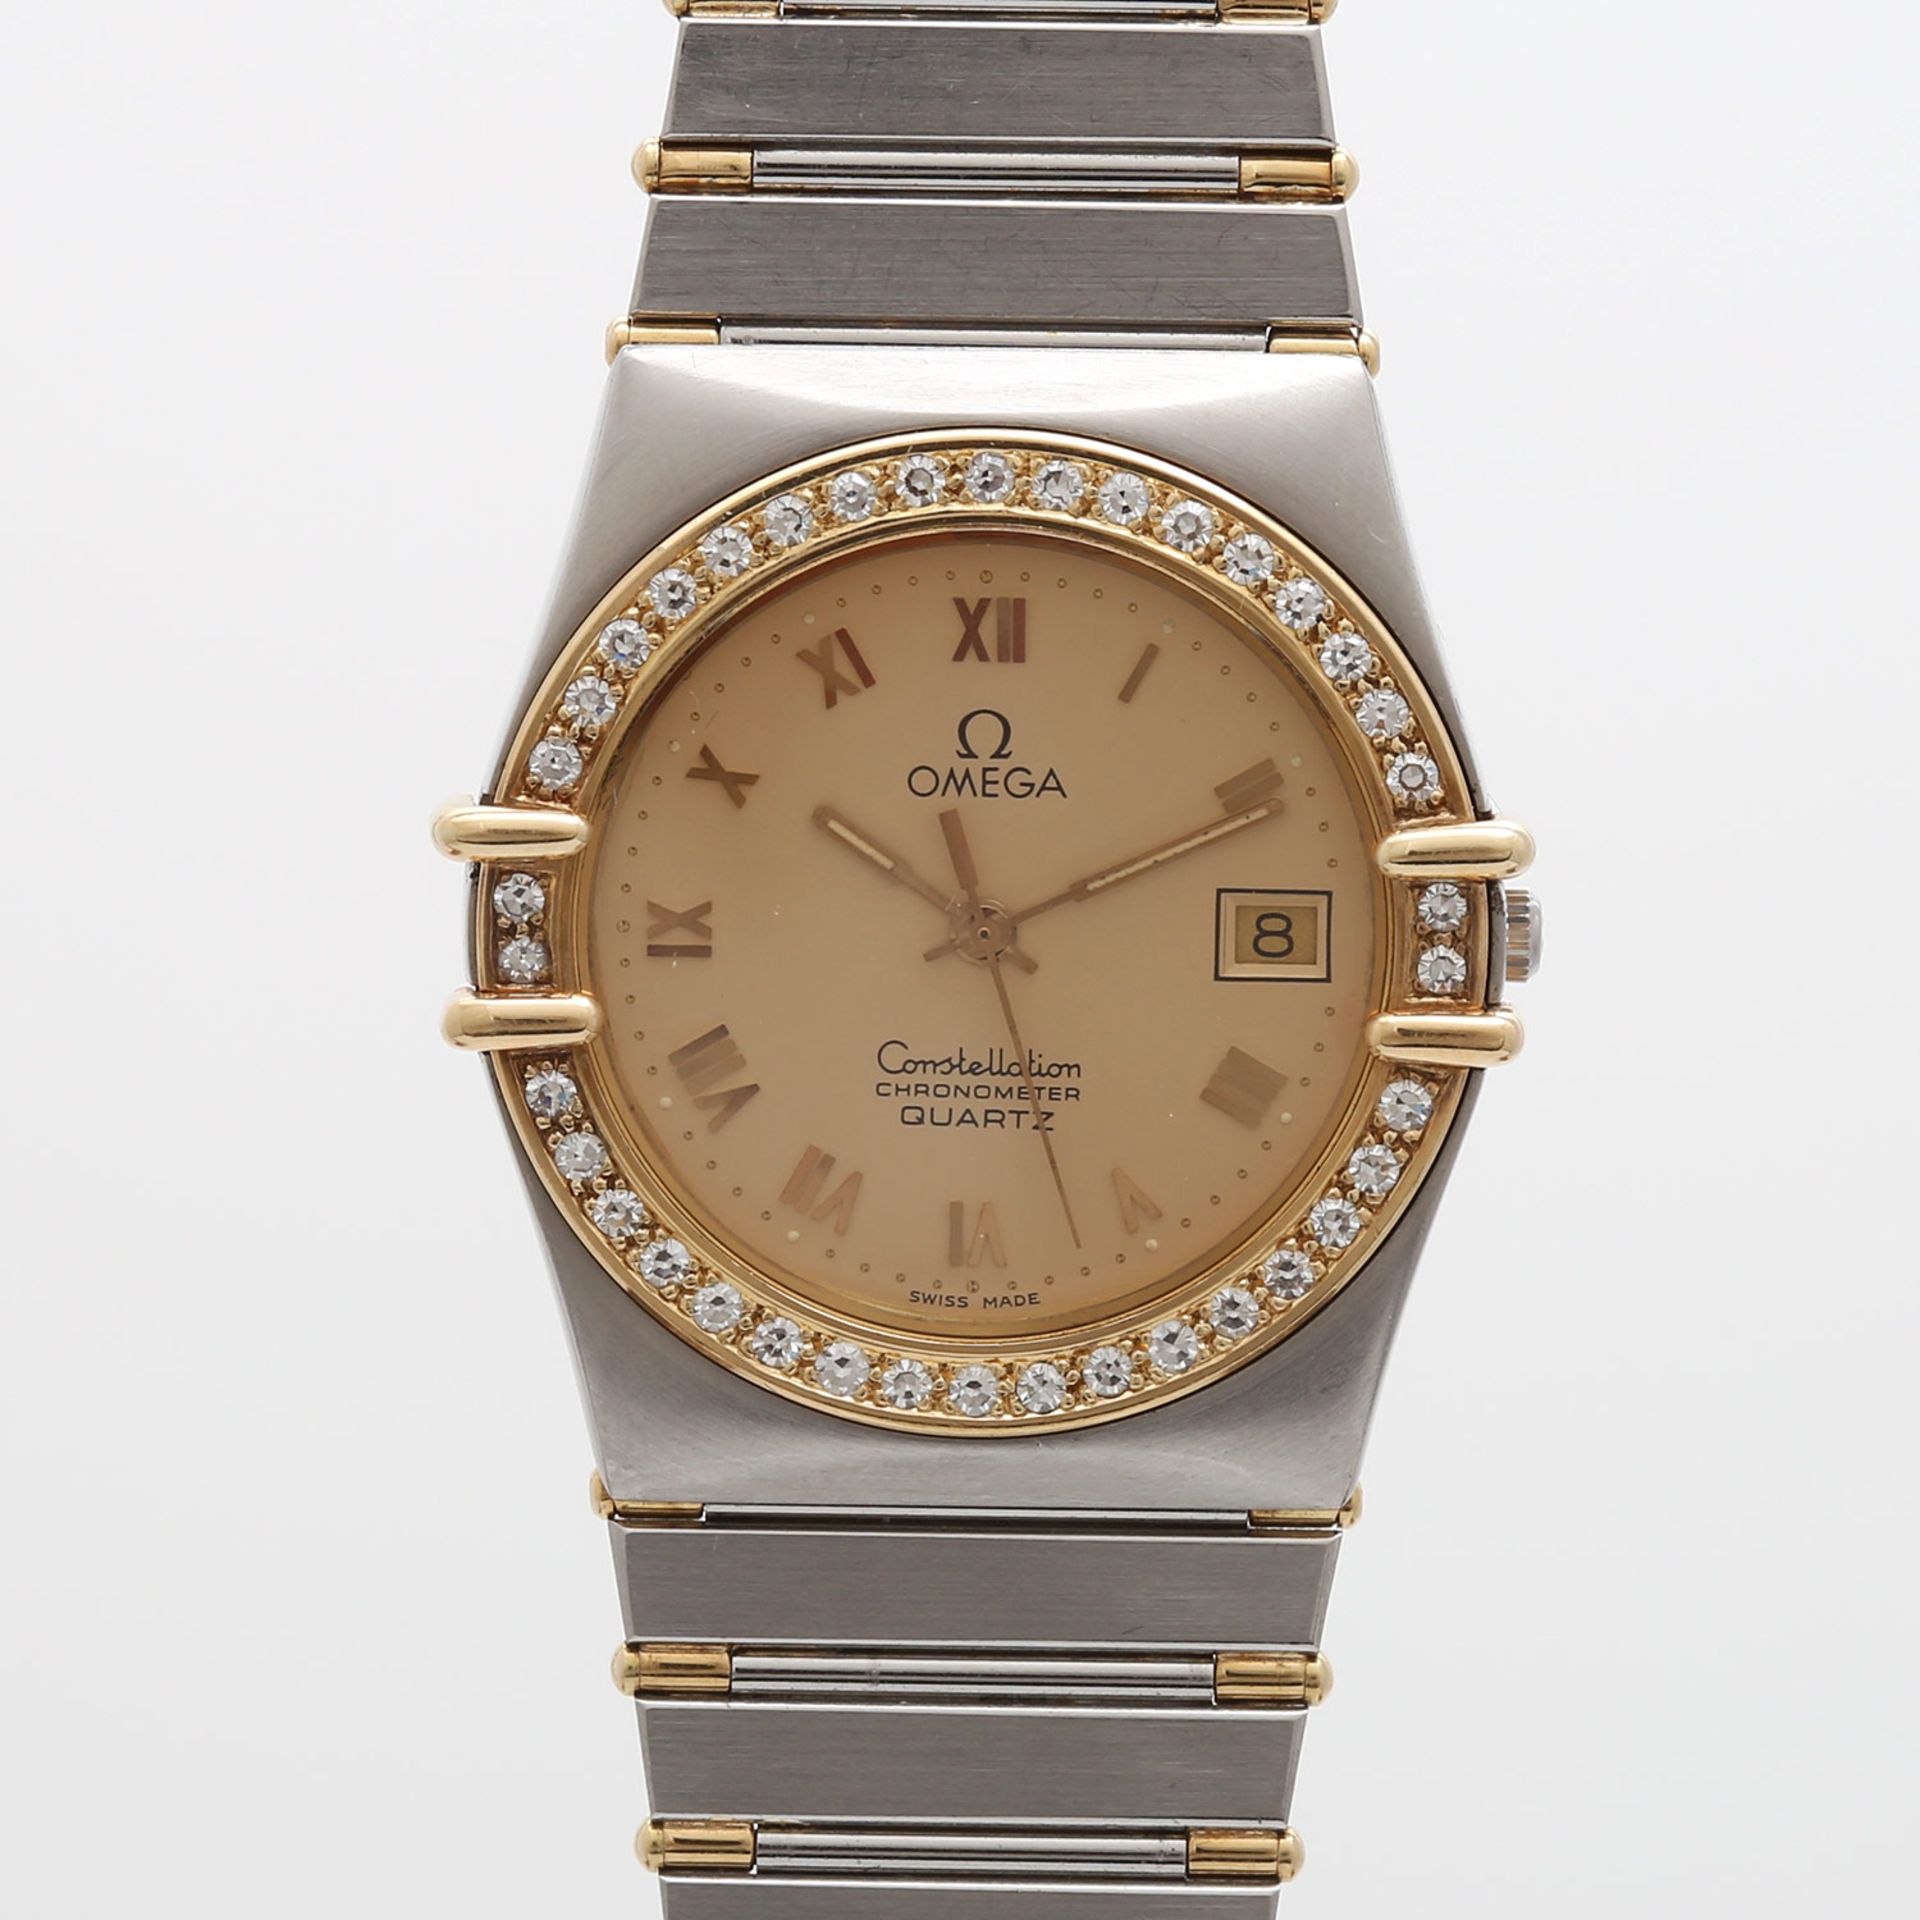 OMEGA Armbanduhr "Constellation", 1990er Jahre. Edelstahl/GG 18K. Diam.-Lünette, zus. ca. 0,60ct